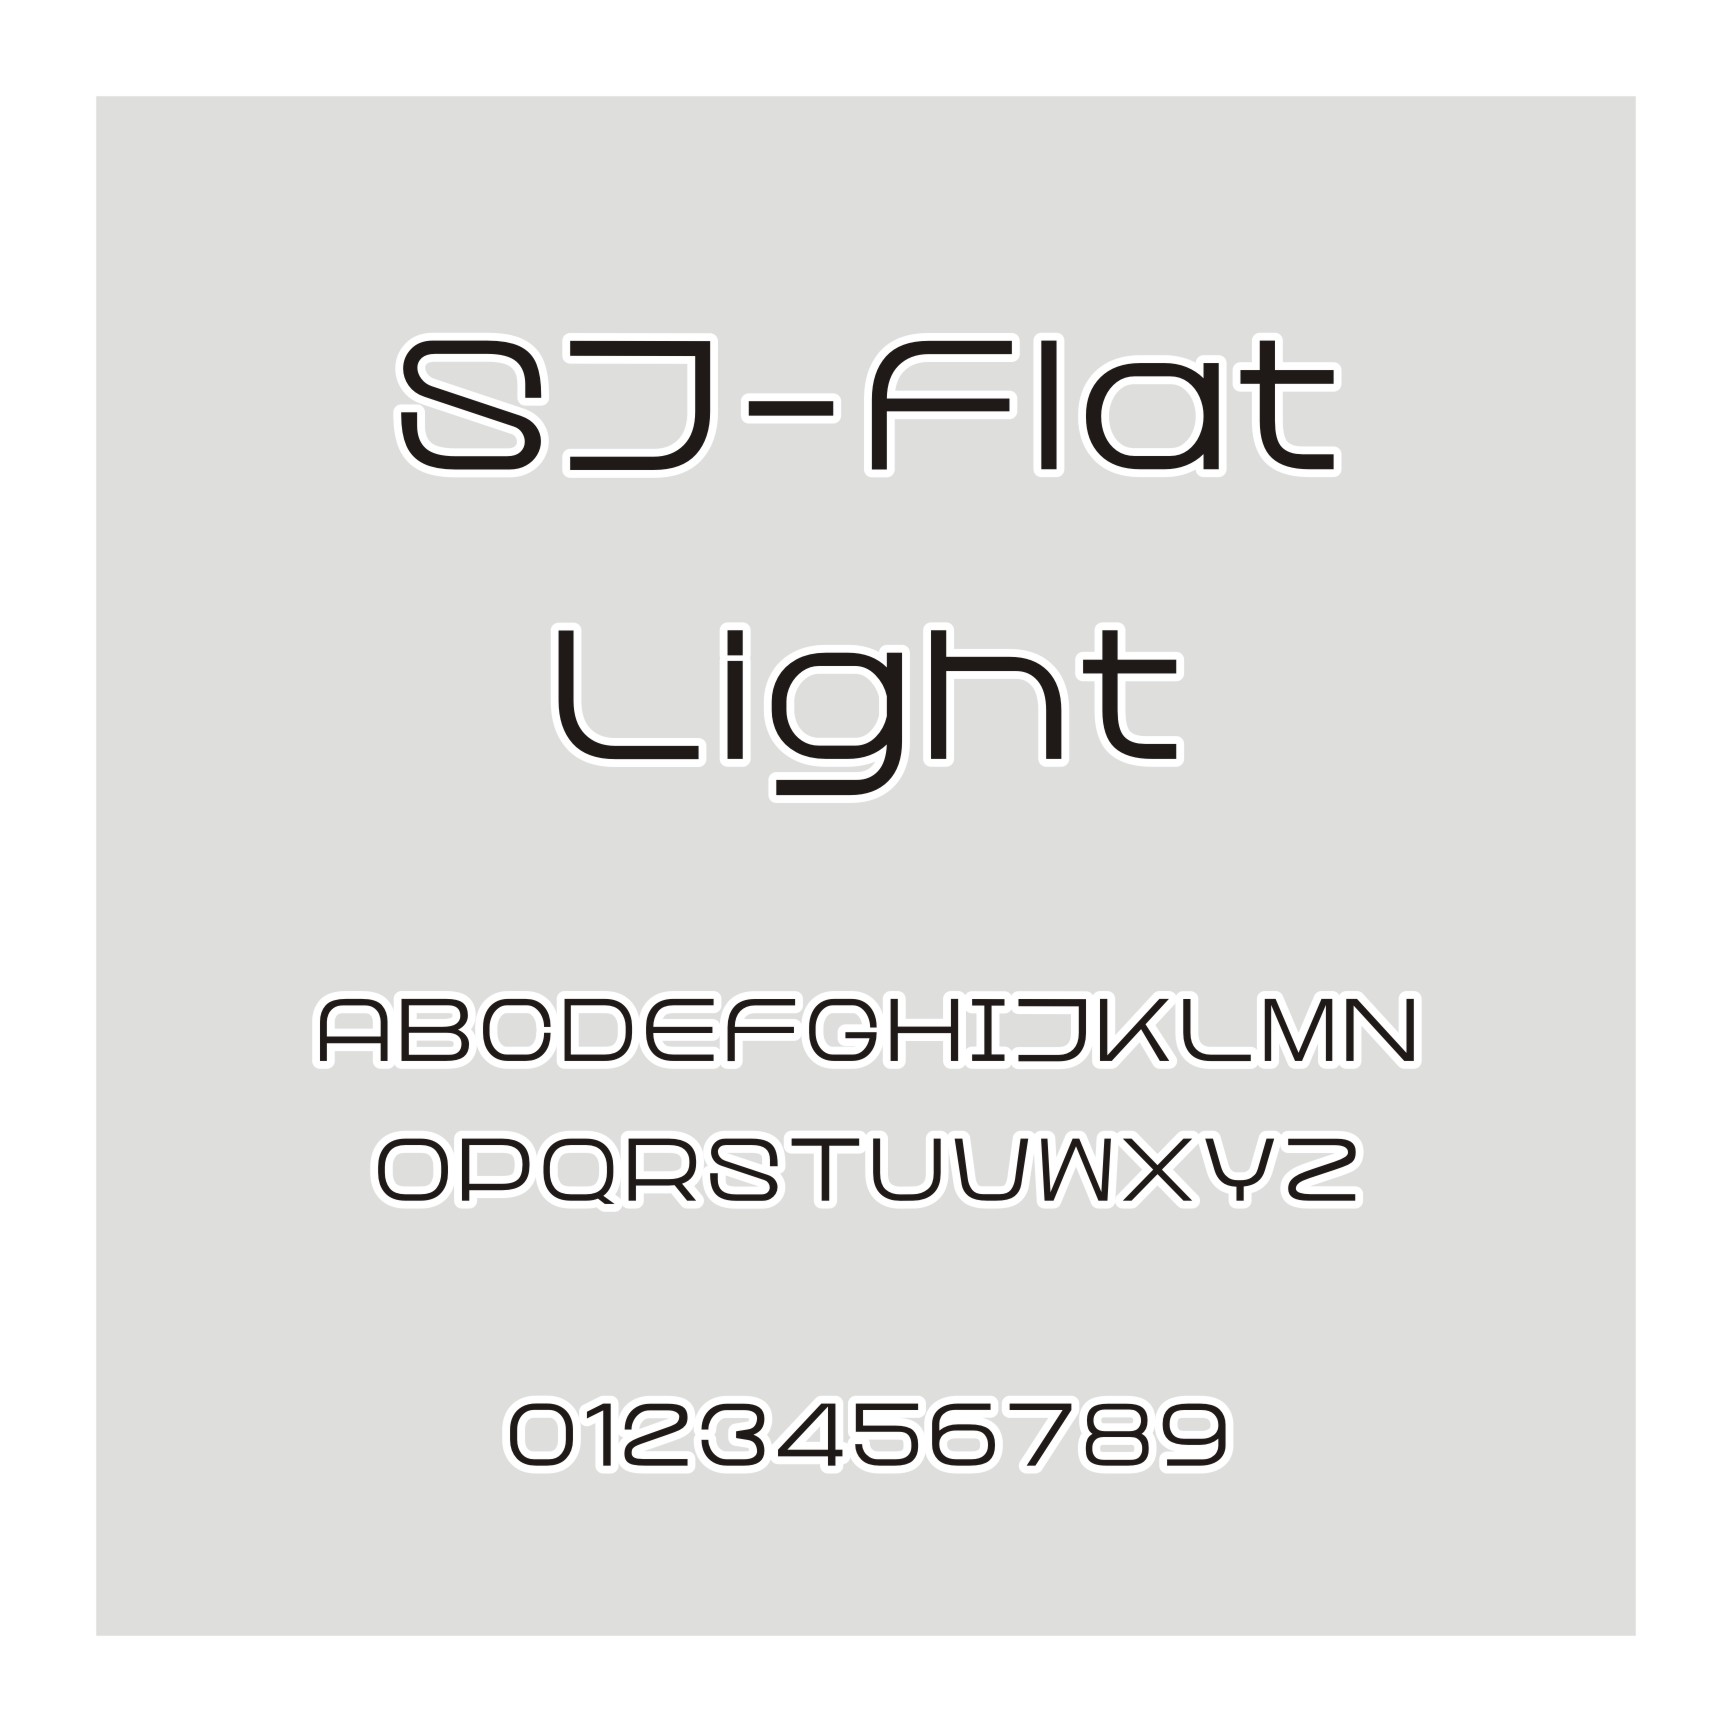 SJ-Flat Light